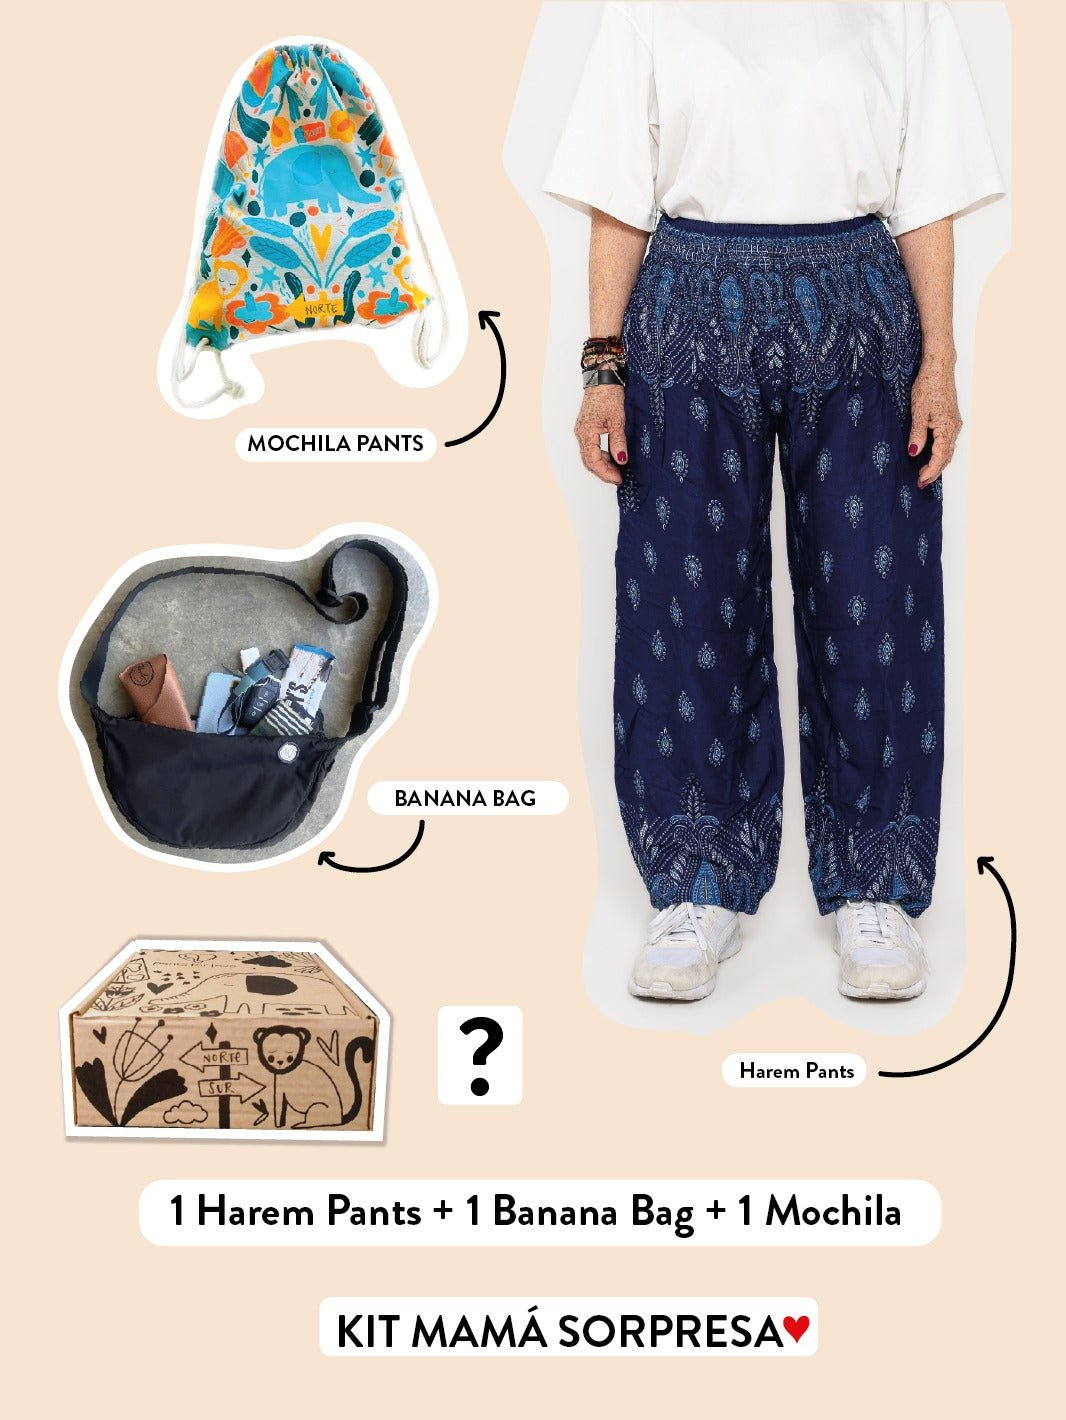 KIT MAMÁ SORPRESA: 1 HAREM PANT + BANANA BAG + 1 MOCHILA PANTS - Pantsforlove Pantalones anchos, pantalones yoga